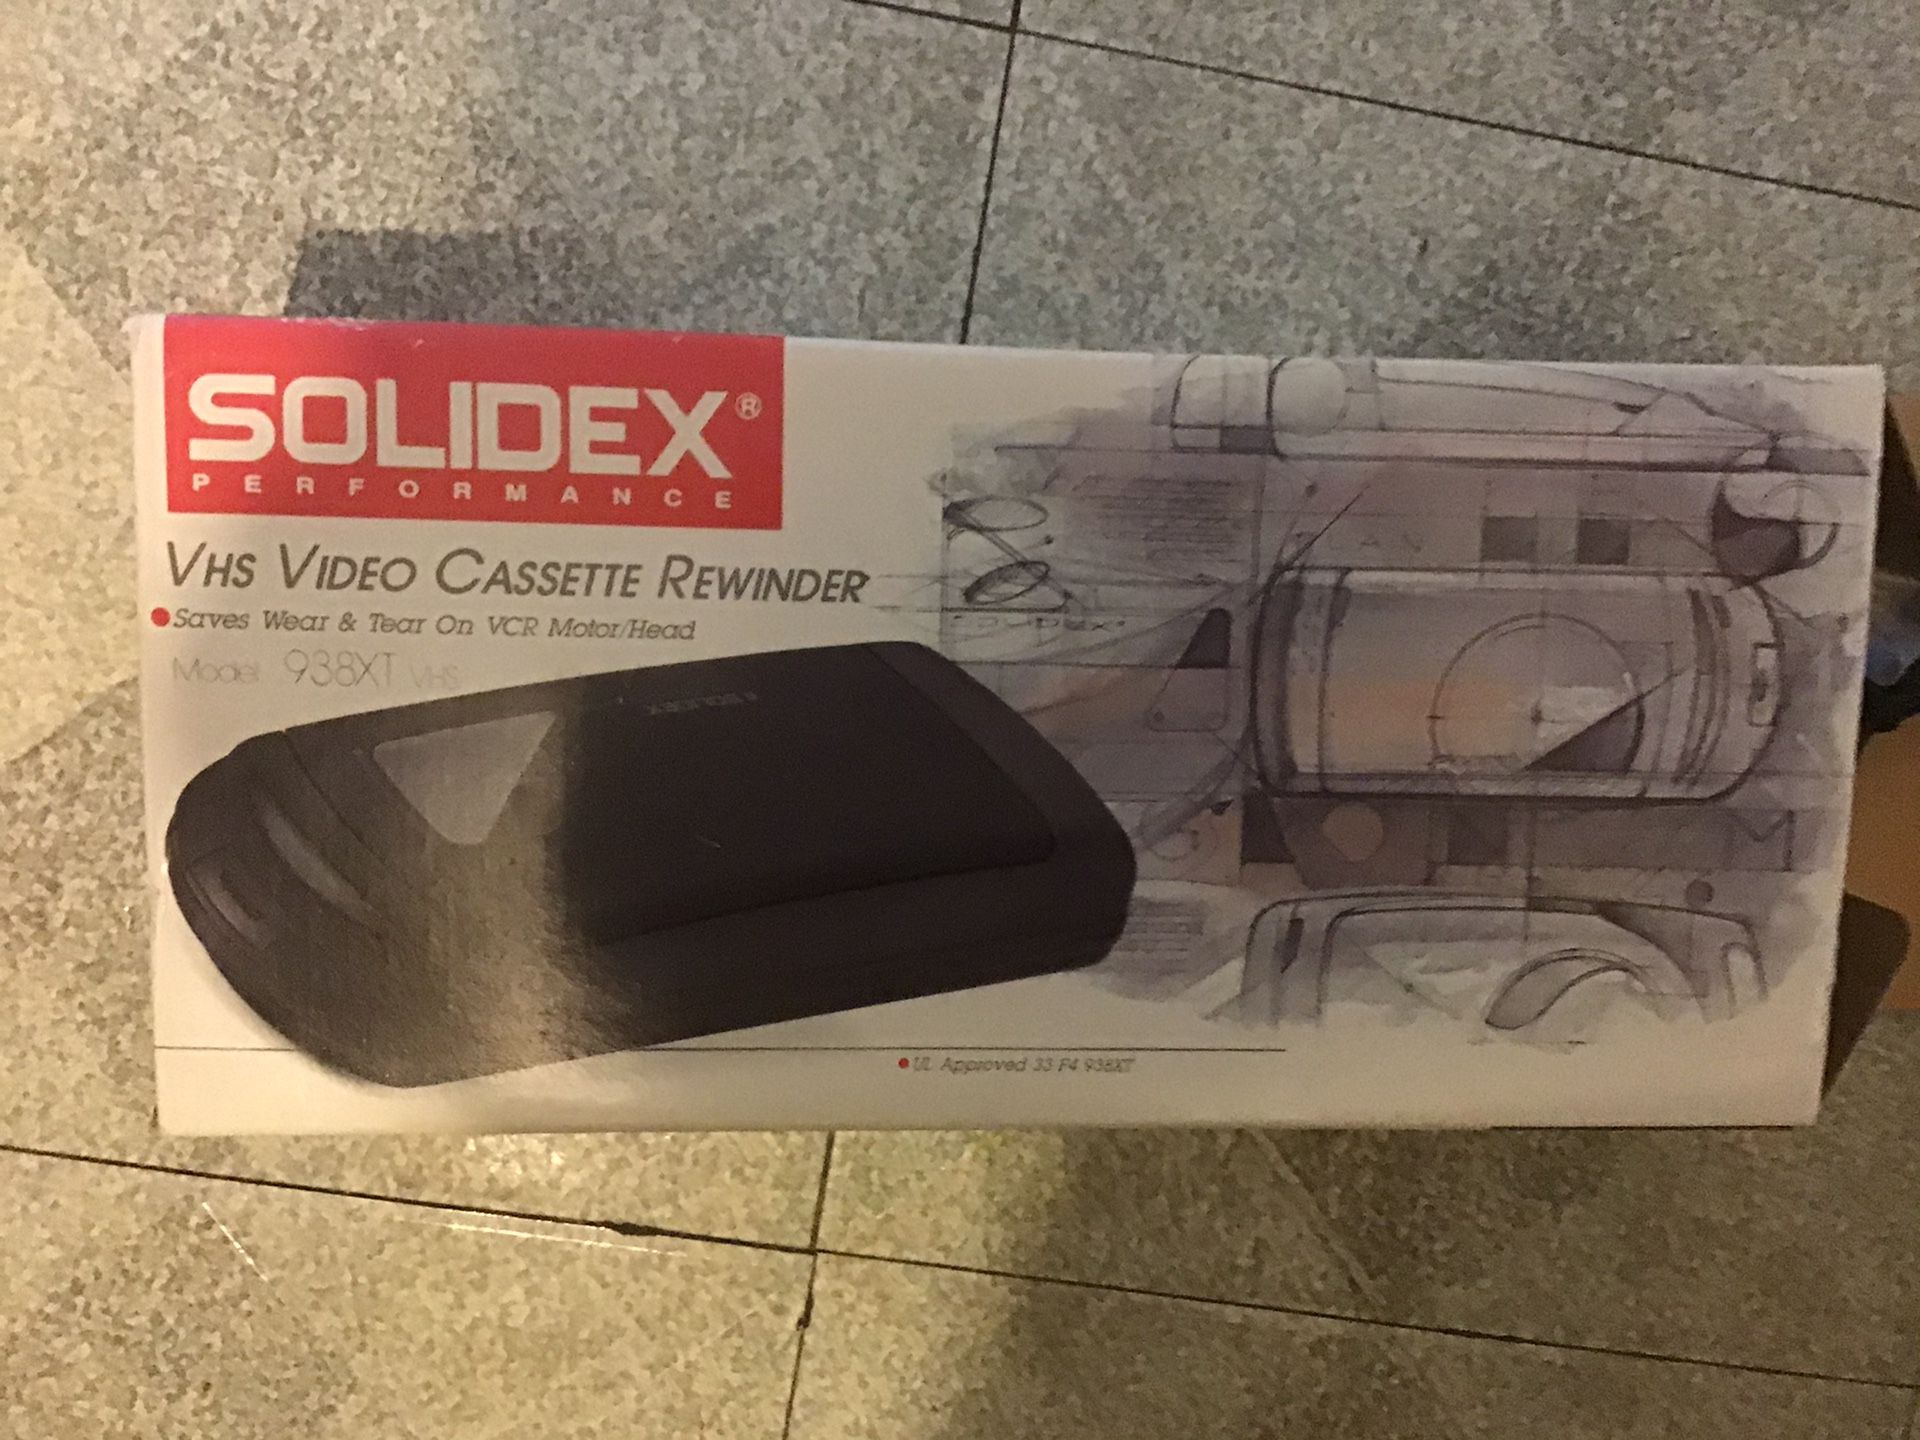 NEW Video Cassette Rewinder - Solidex